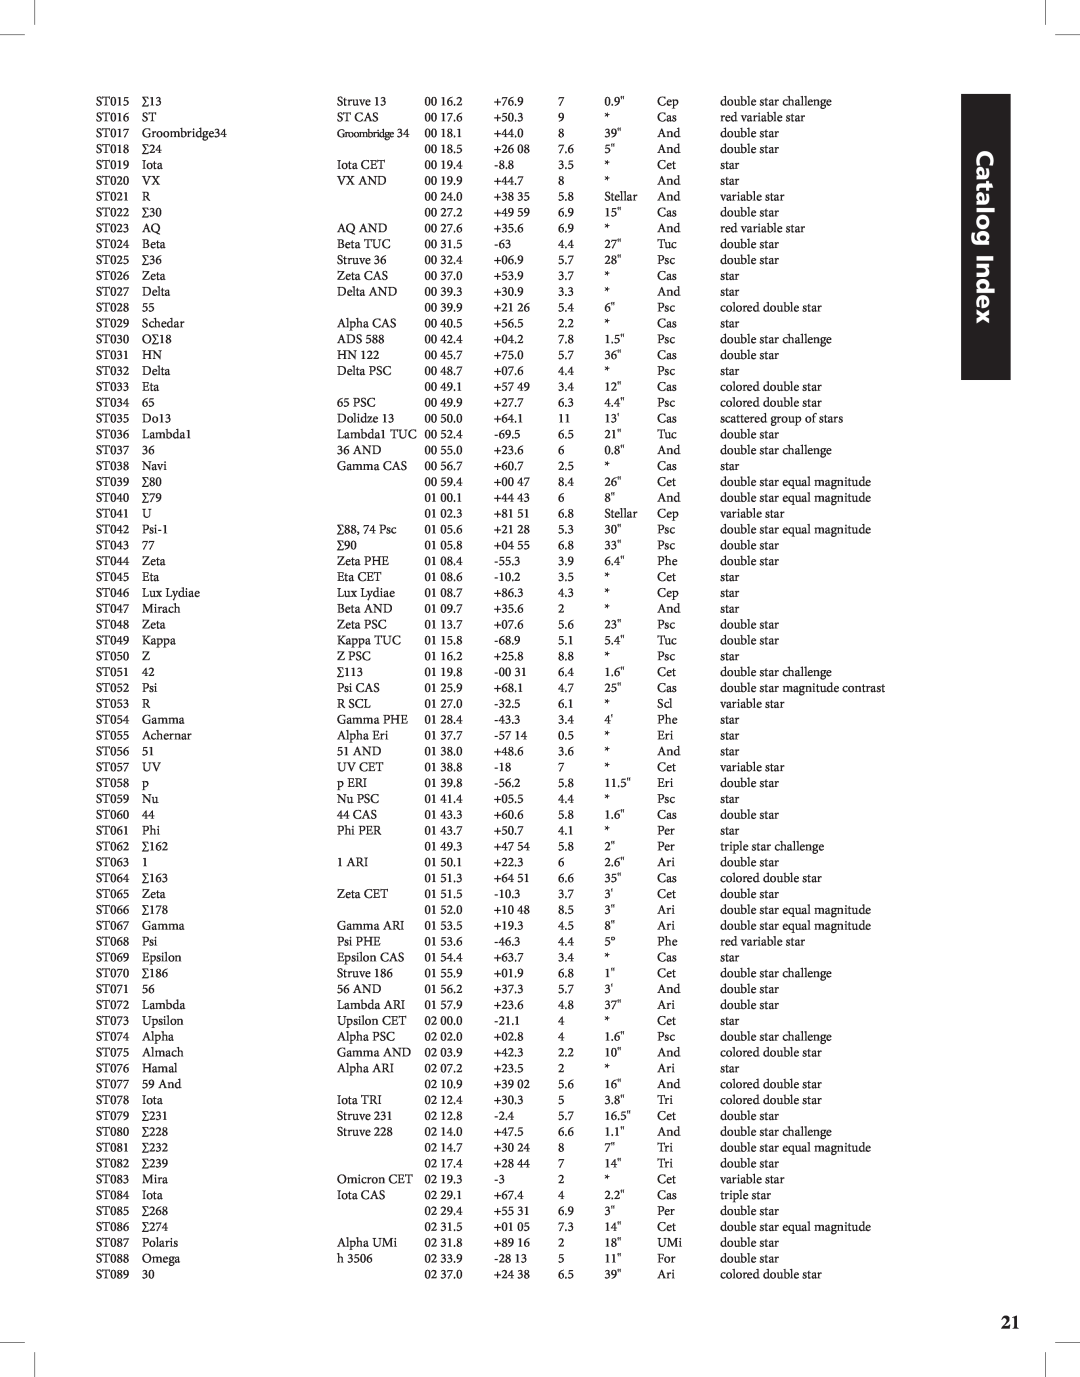 Bushnell Discoverer instruction manual Catalog Index, ST015 